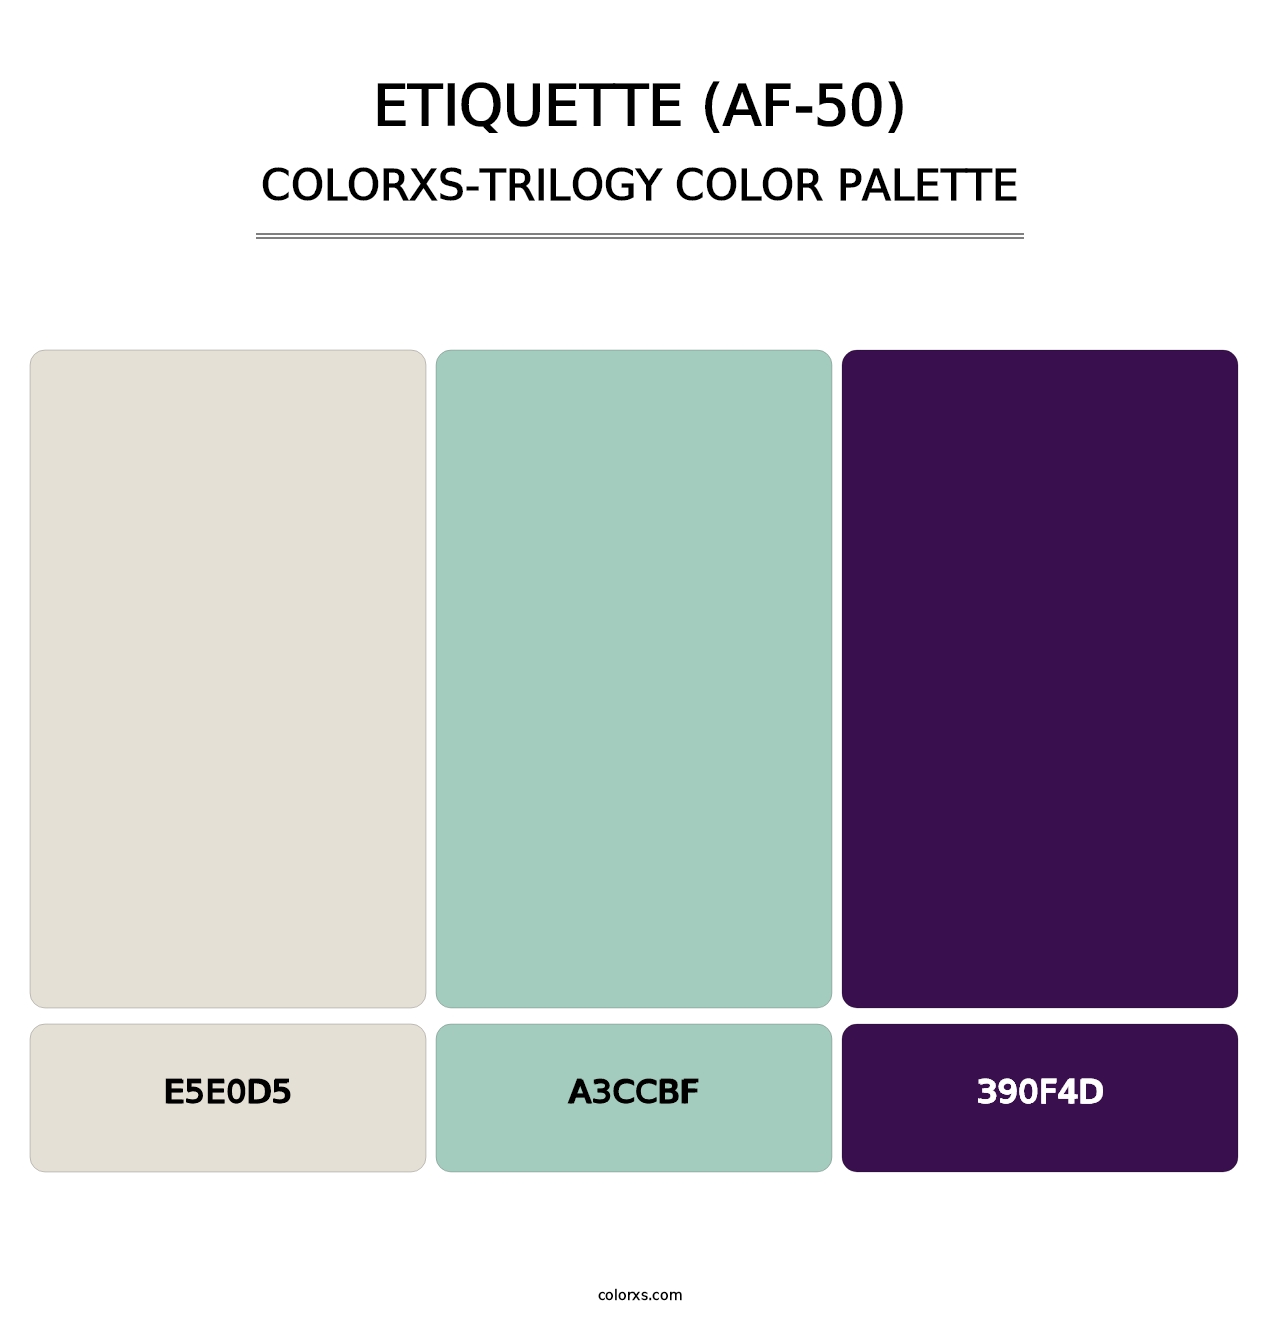 Etiquette (AF-50) - Colorxs Trilogy Palette